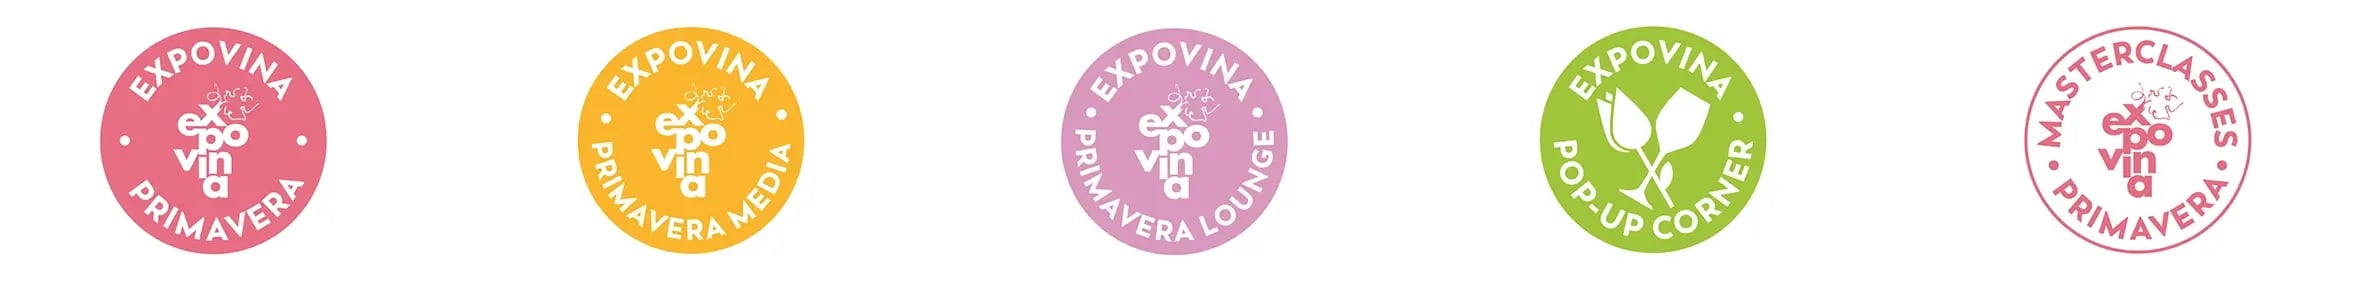 Expovina-Primavera-Frühlings-Weinmesse-Branding-3